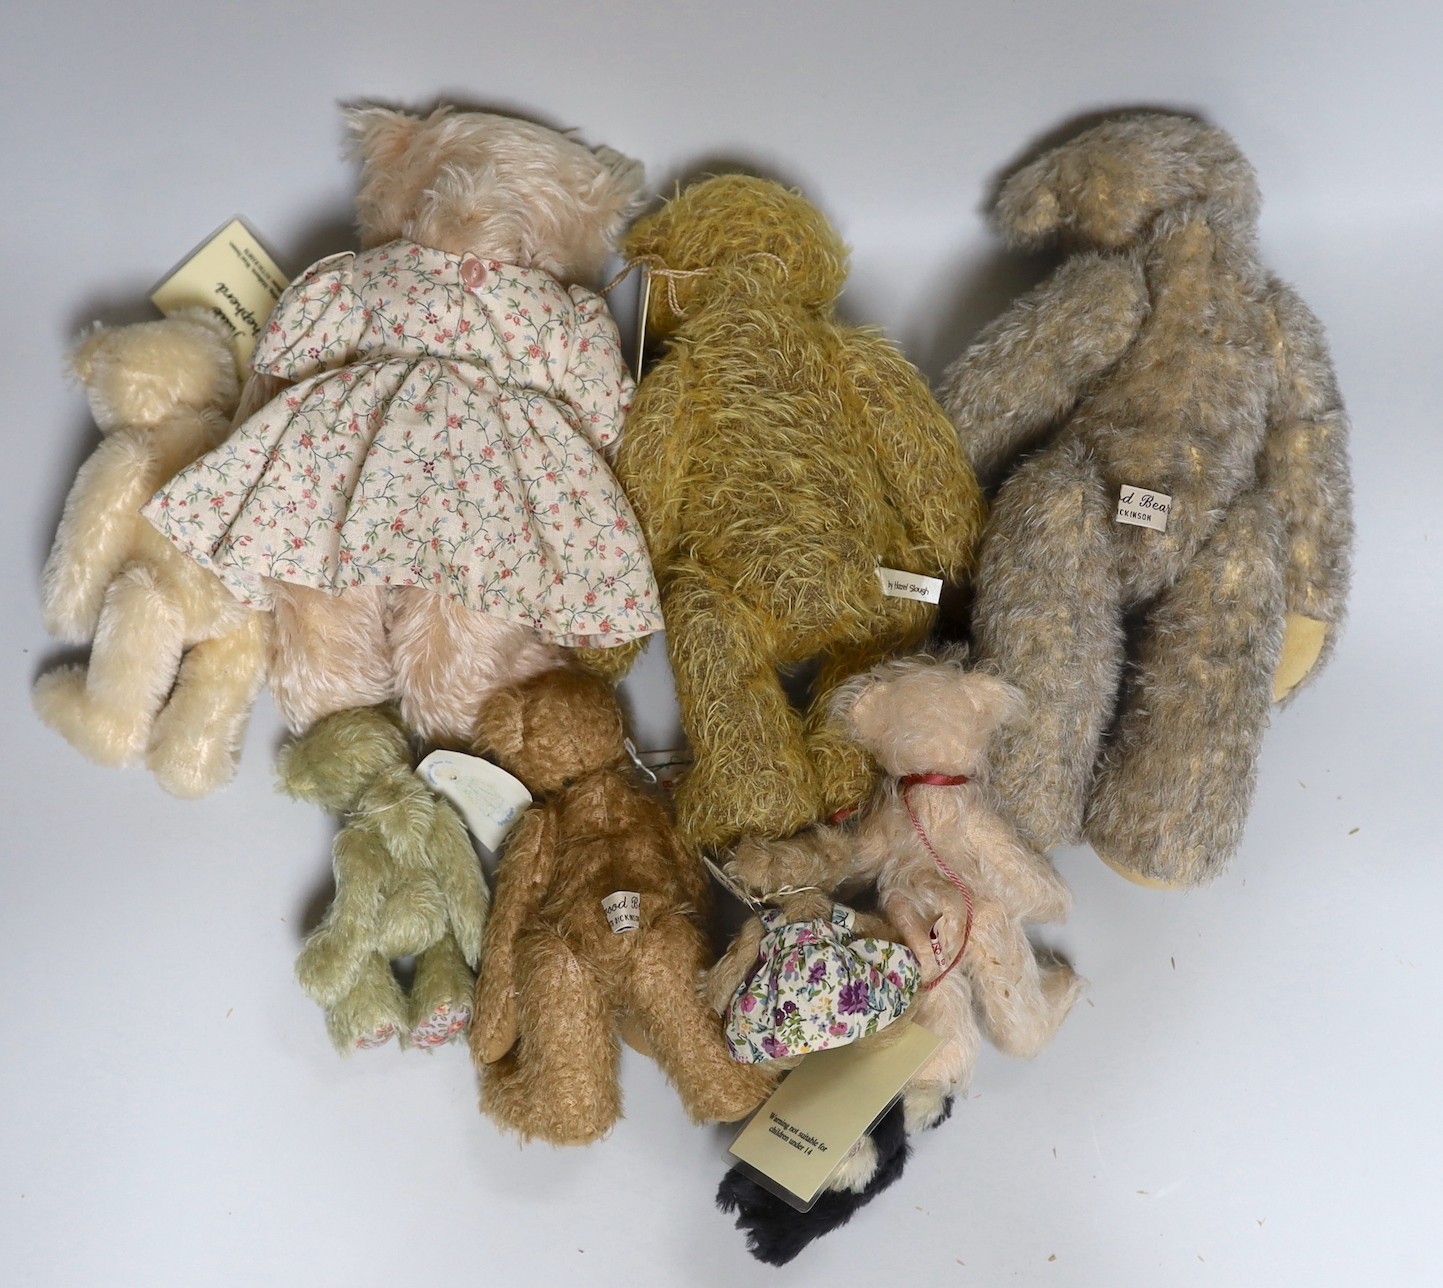 Nine various limited edition Teddy bears